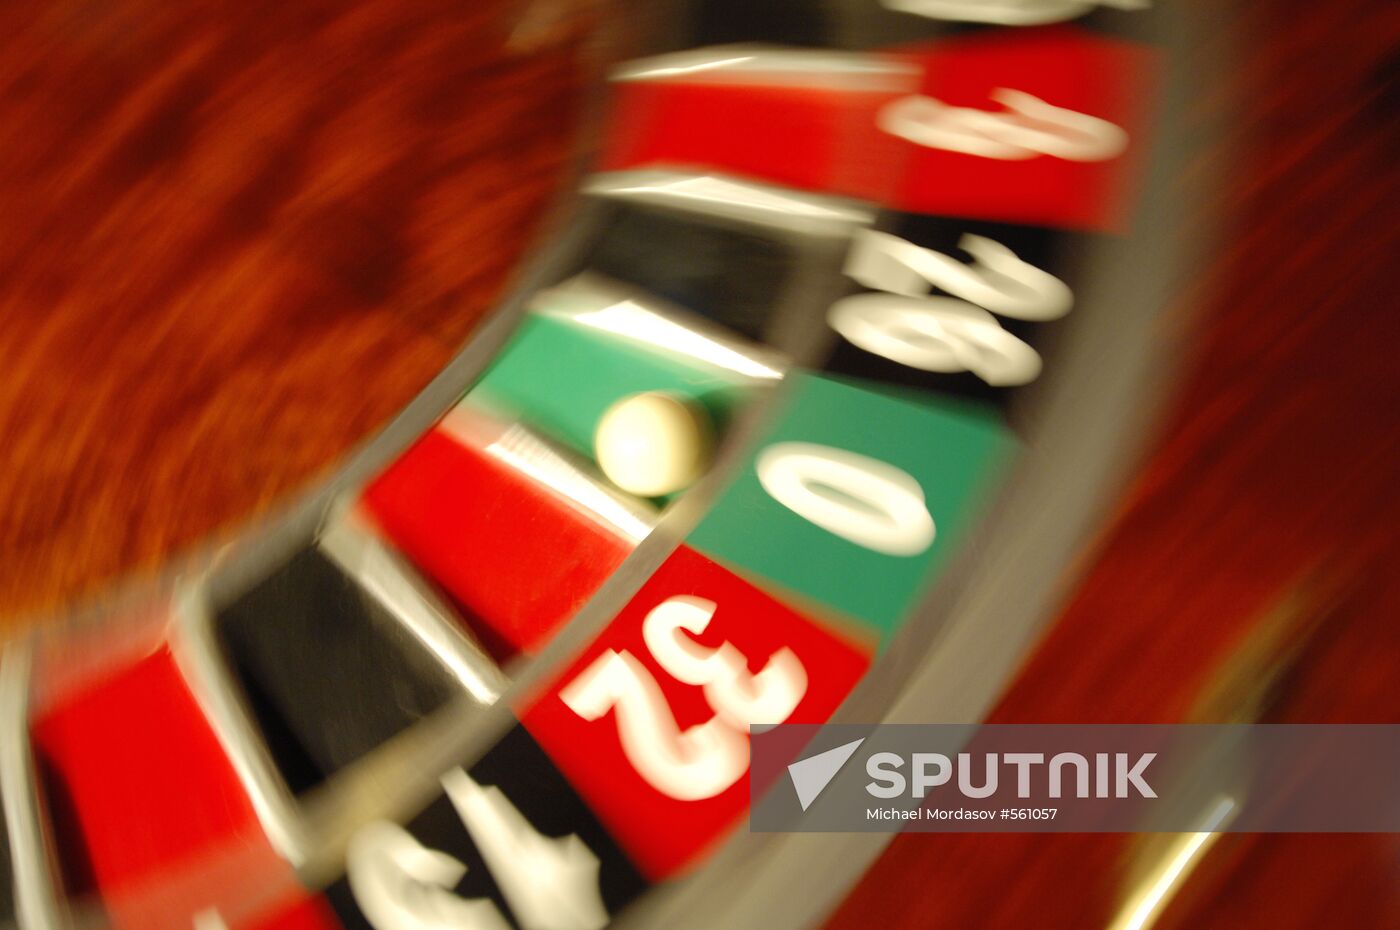 Roulette at Orakul casino